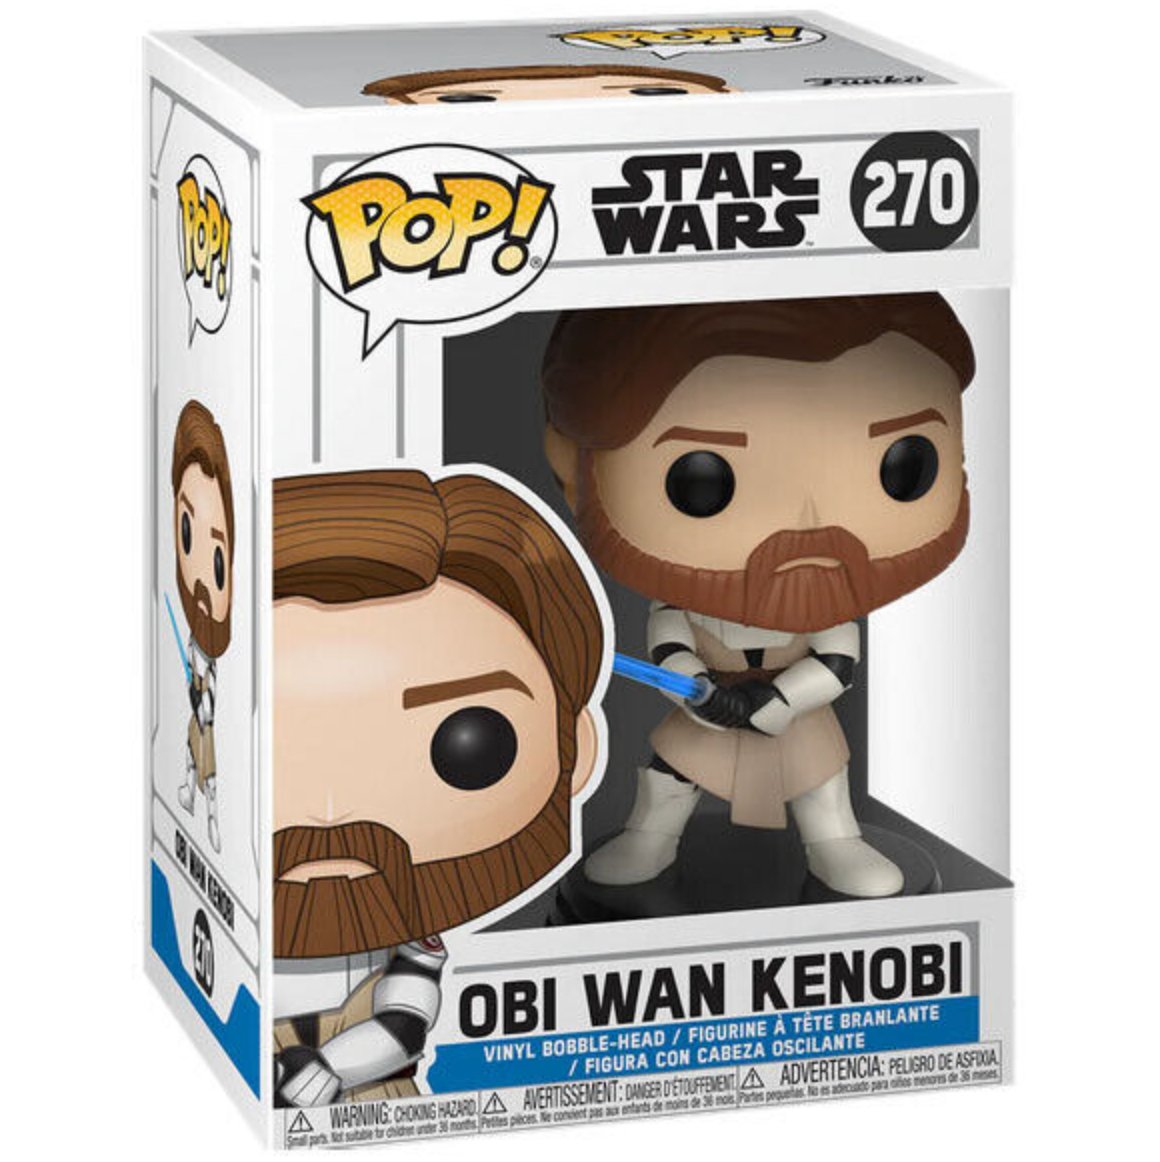 Star Wars - Obi-Wan Kenobi [Clone Wars] #270 - Funko Pop! Vinyl Star Wars - Persona Toys